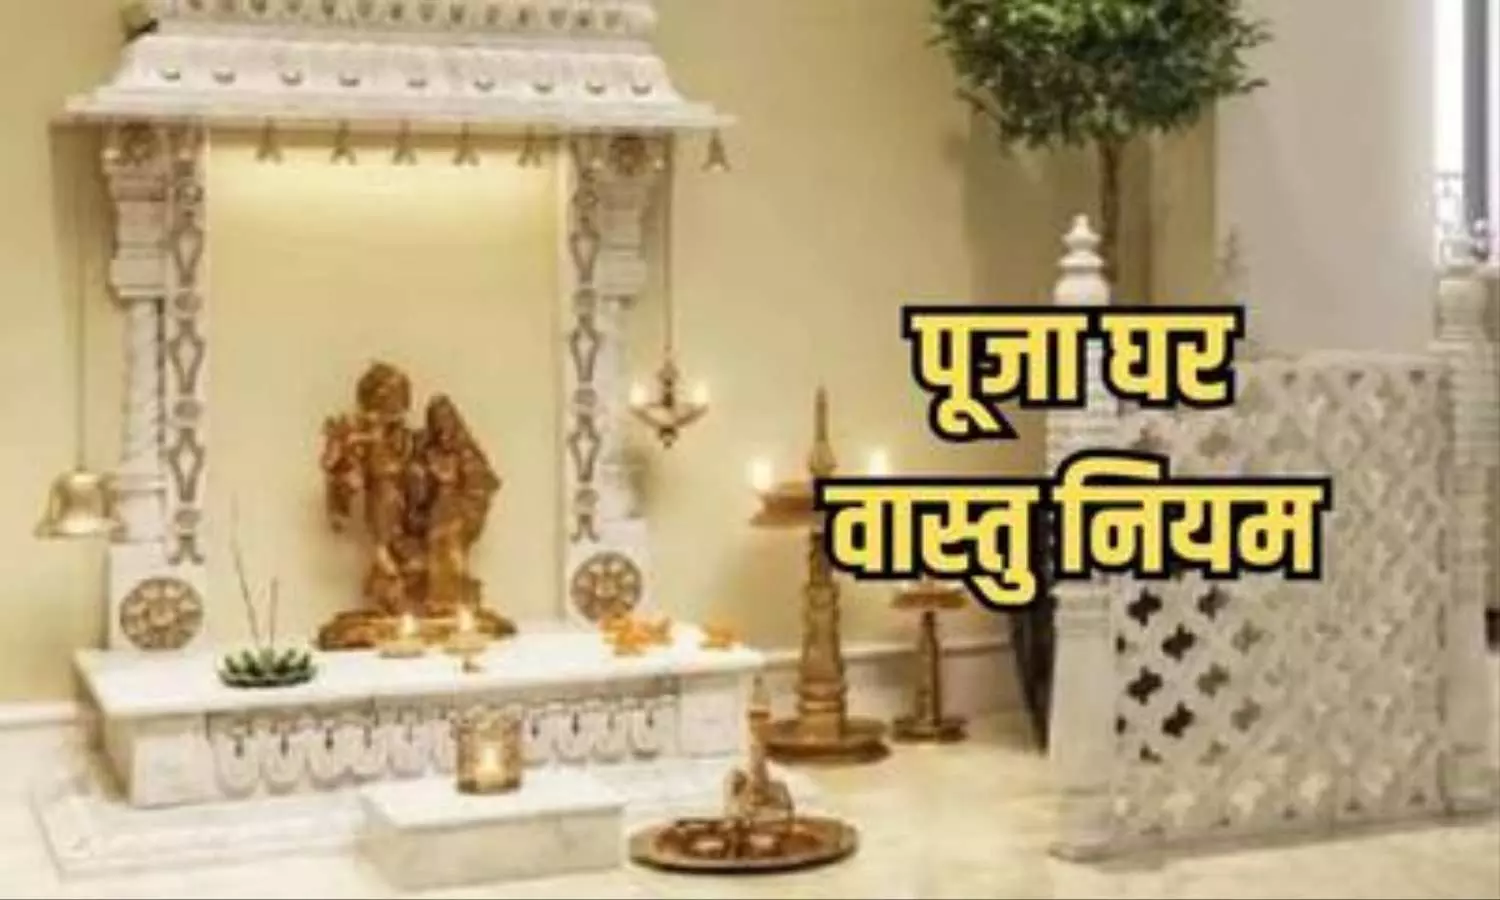 Vastu Tips: इस दिशा में बेहद शुभ होता है घर के मंदिर में भगवान का मुख होना